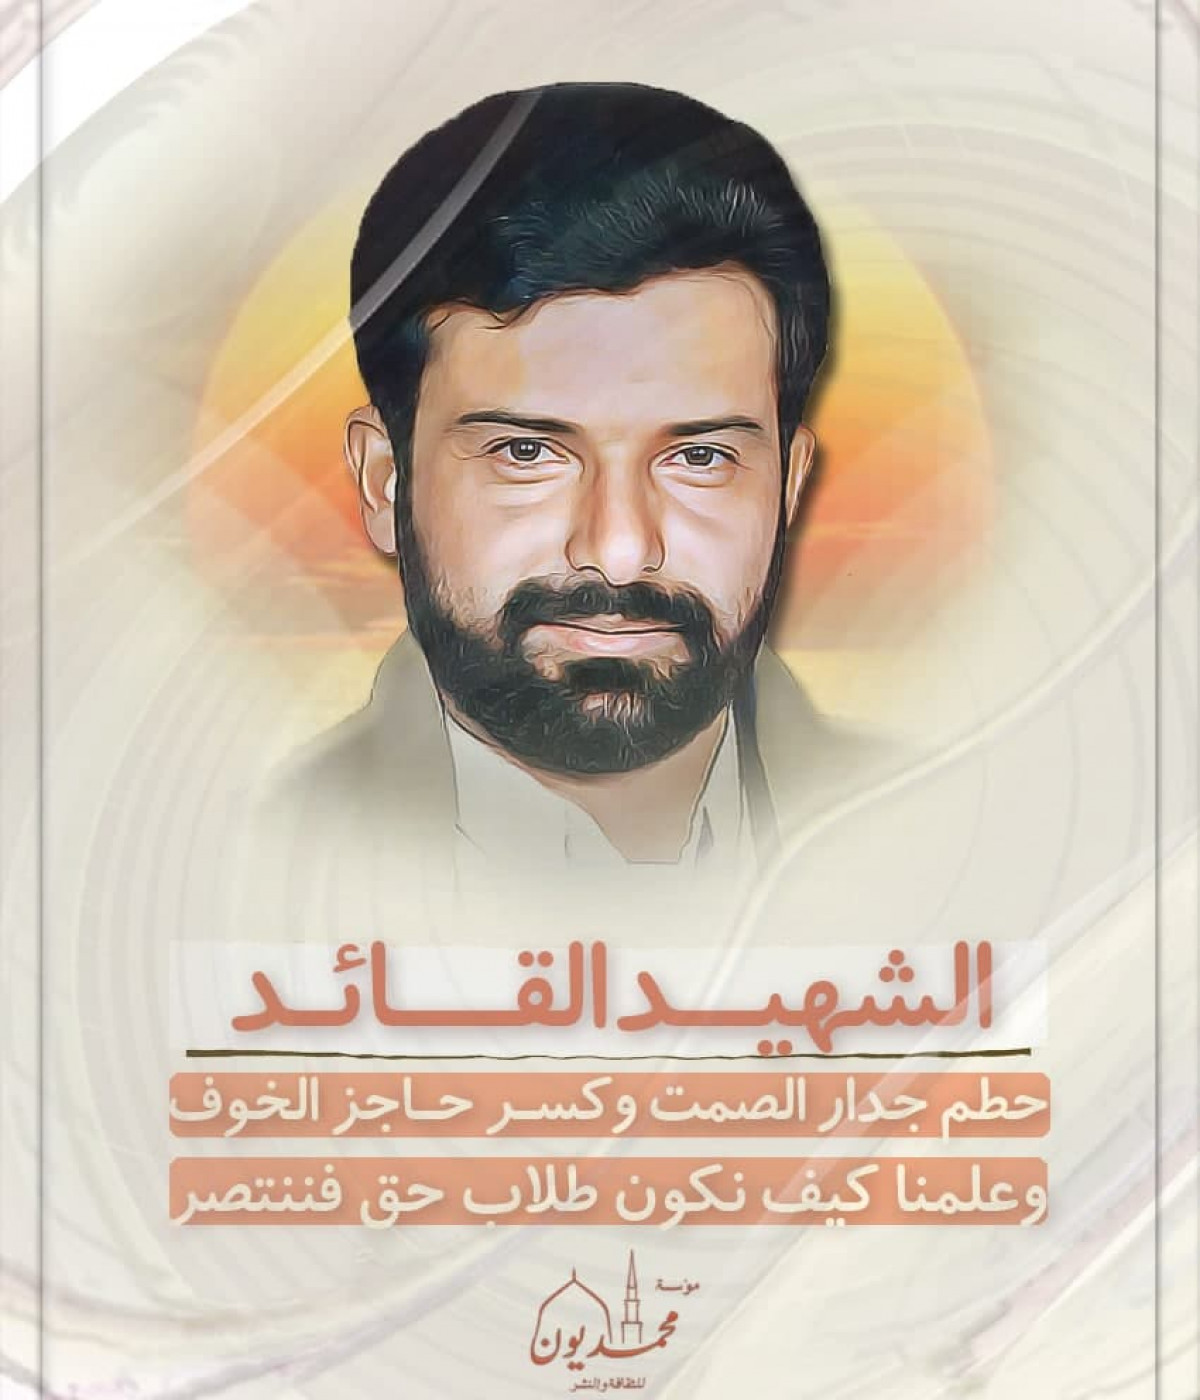 حسين بدر الدين الحوثي